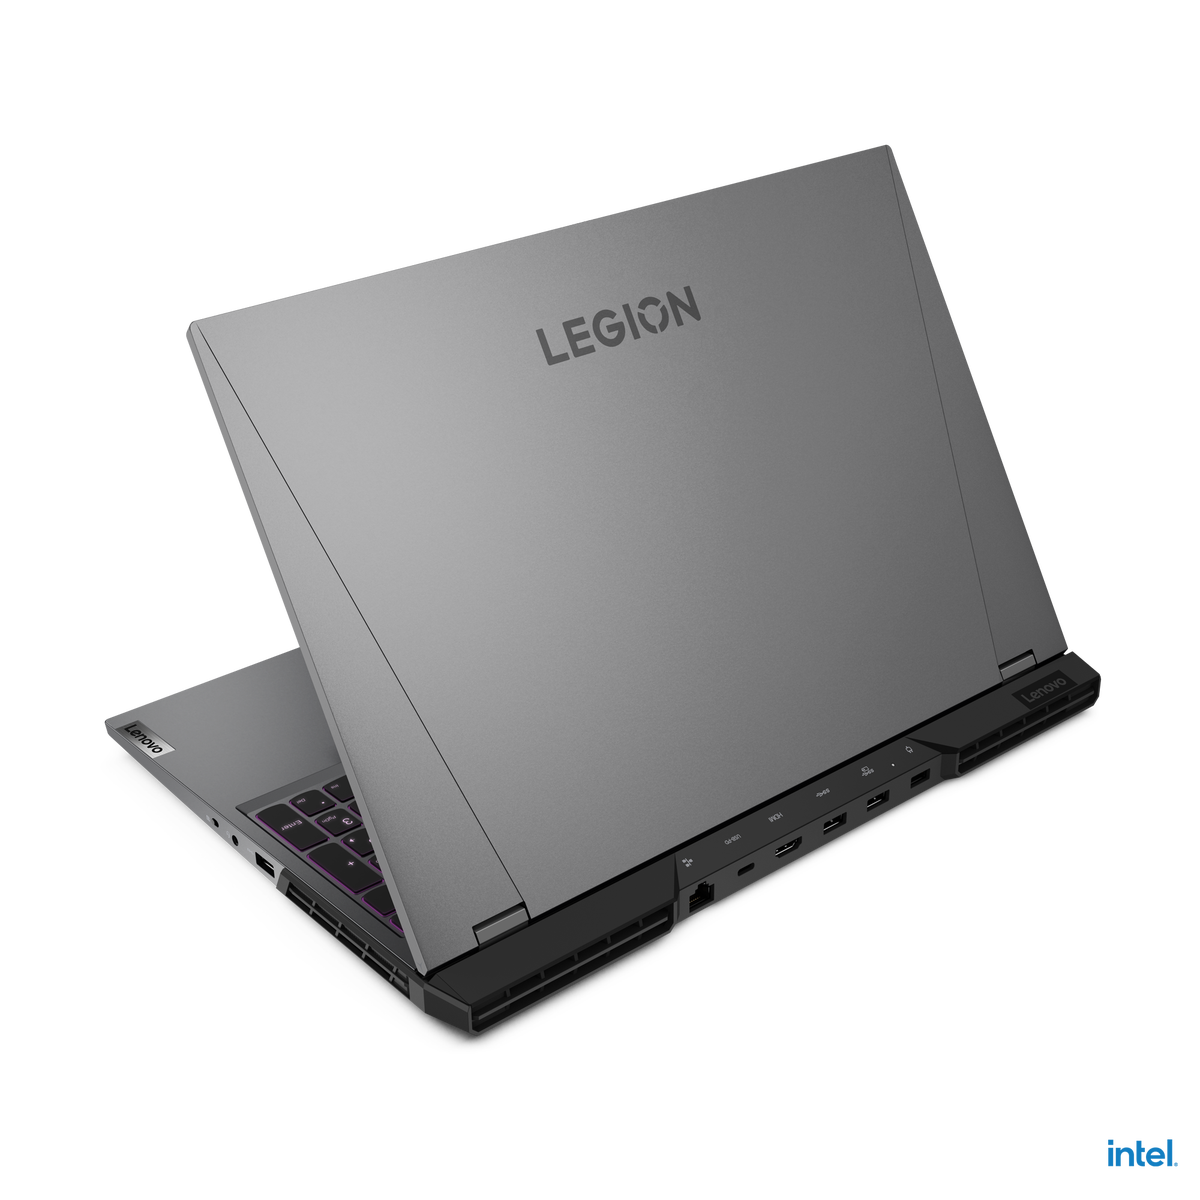 เติมเต็มทุกการเล่นและการใช้งานให้ตอบโจทย์ในทุกด้าน ด้วย Lenovo Legion 5i Pro และ Lenovo Legion 5i เจนเนอเรชั่นใหม่ล่าสุด